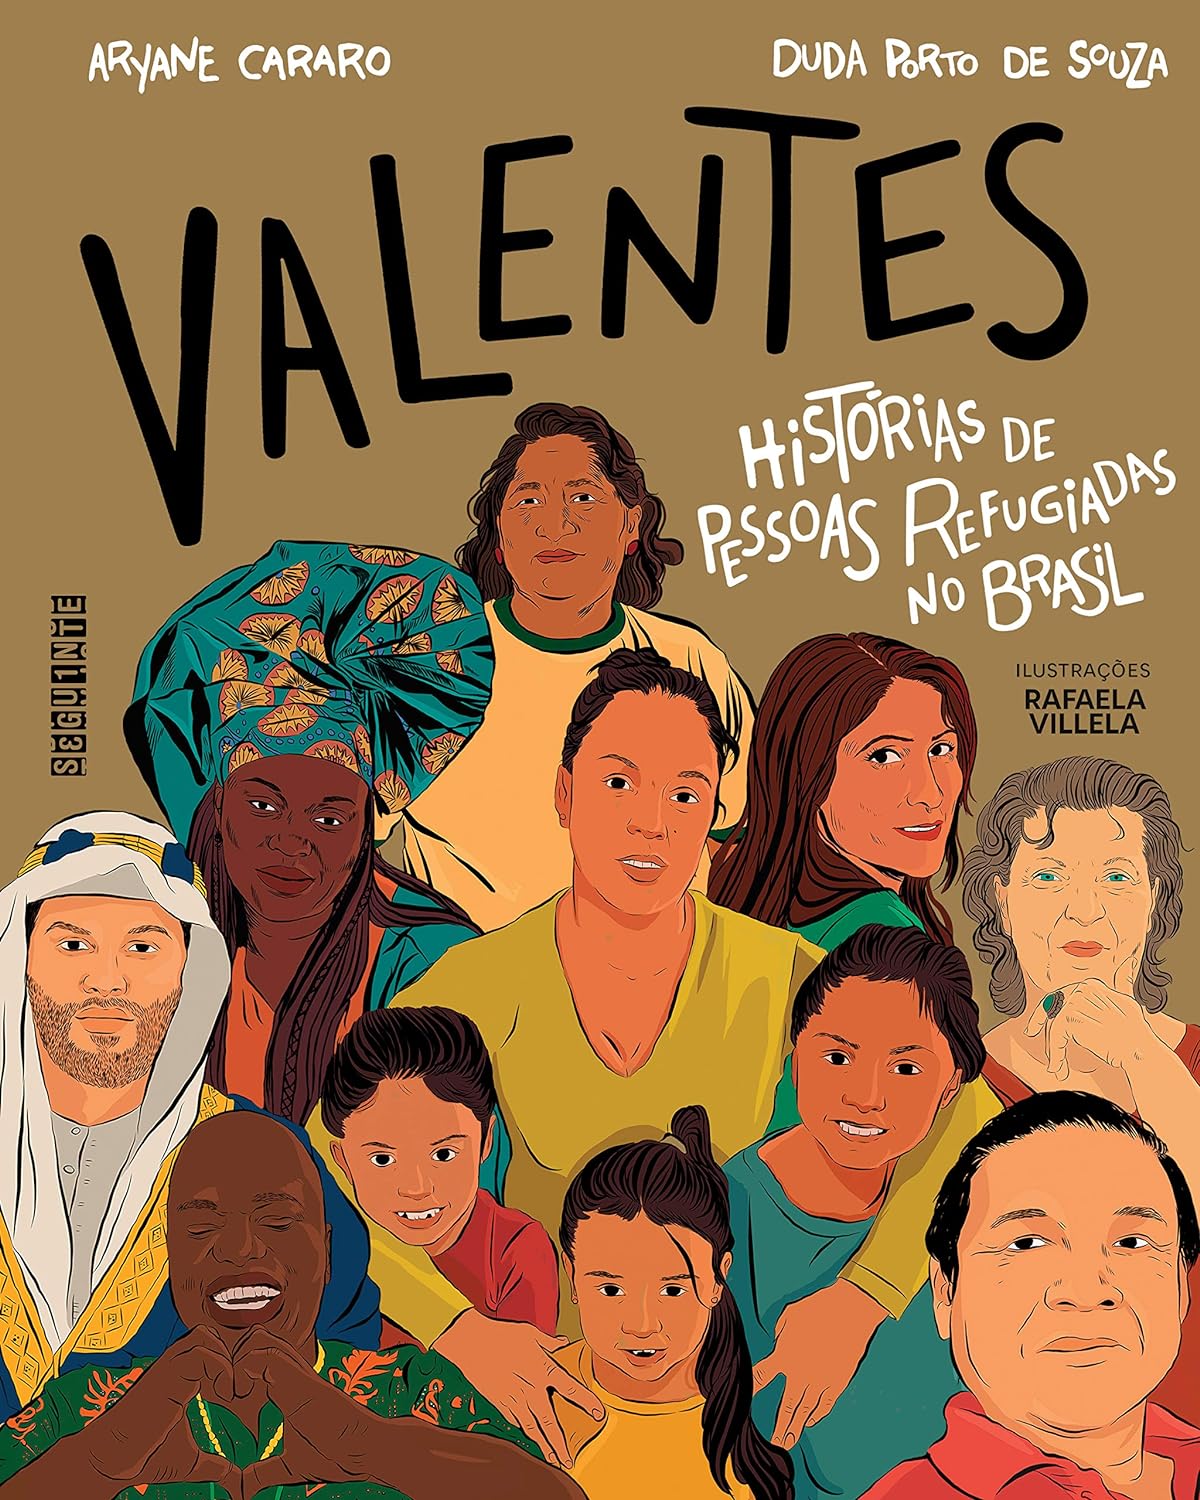 Valentes: histórias de pessoas refugiadas no Brasil